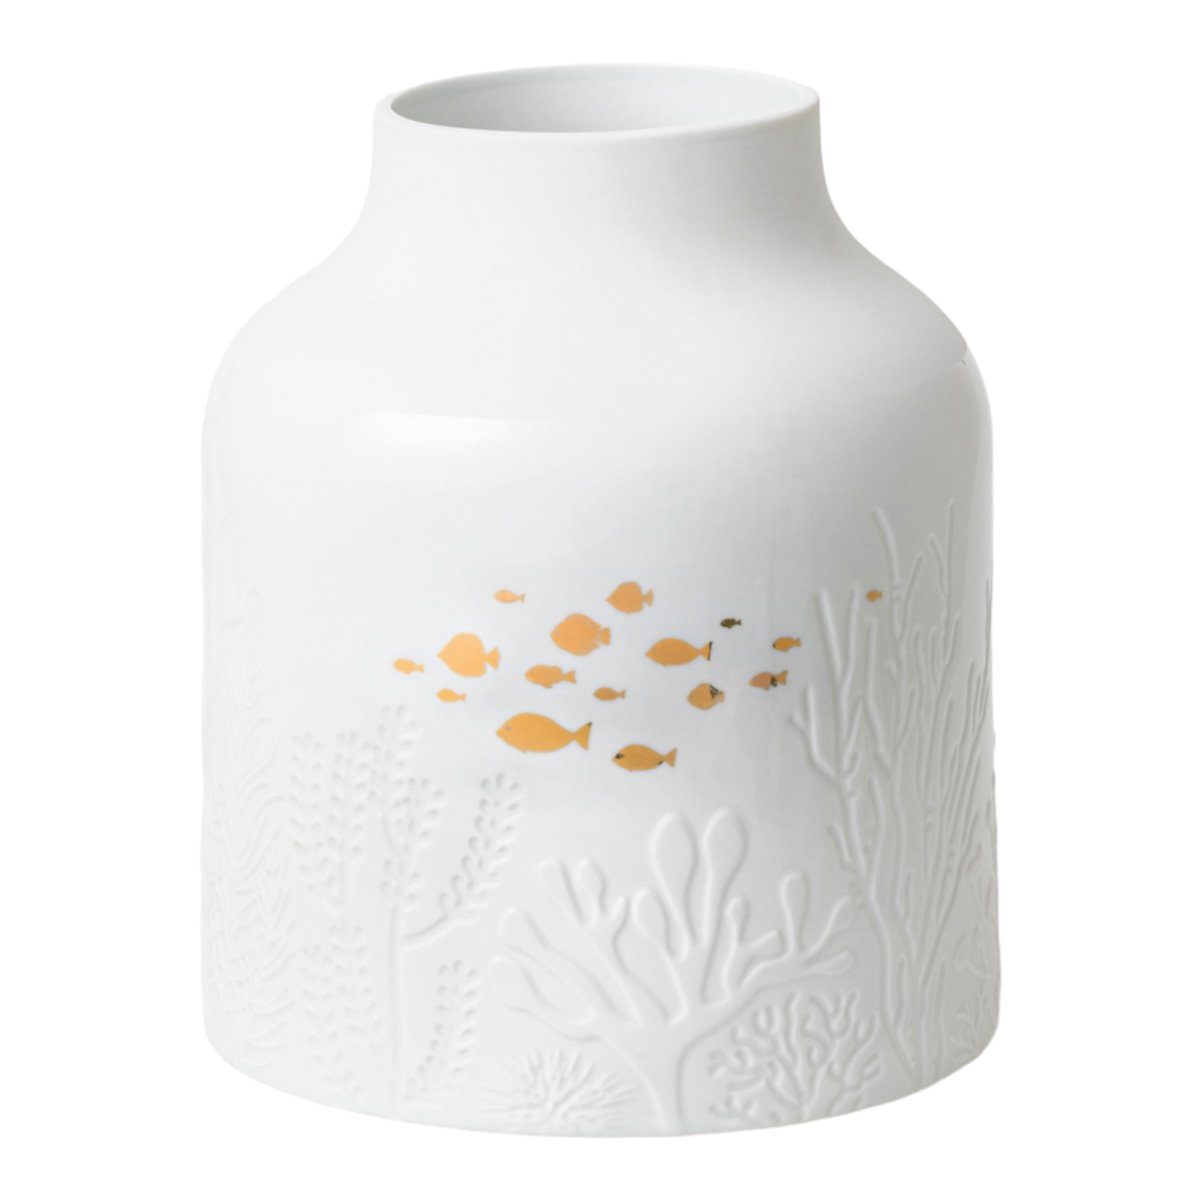 Räder Design Dekovase Vase Unterwasserwelt Porzellan mit Decal weiß gold D21cm H25cm